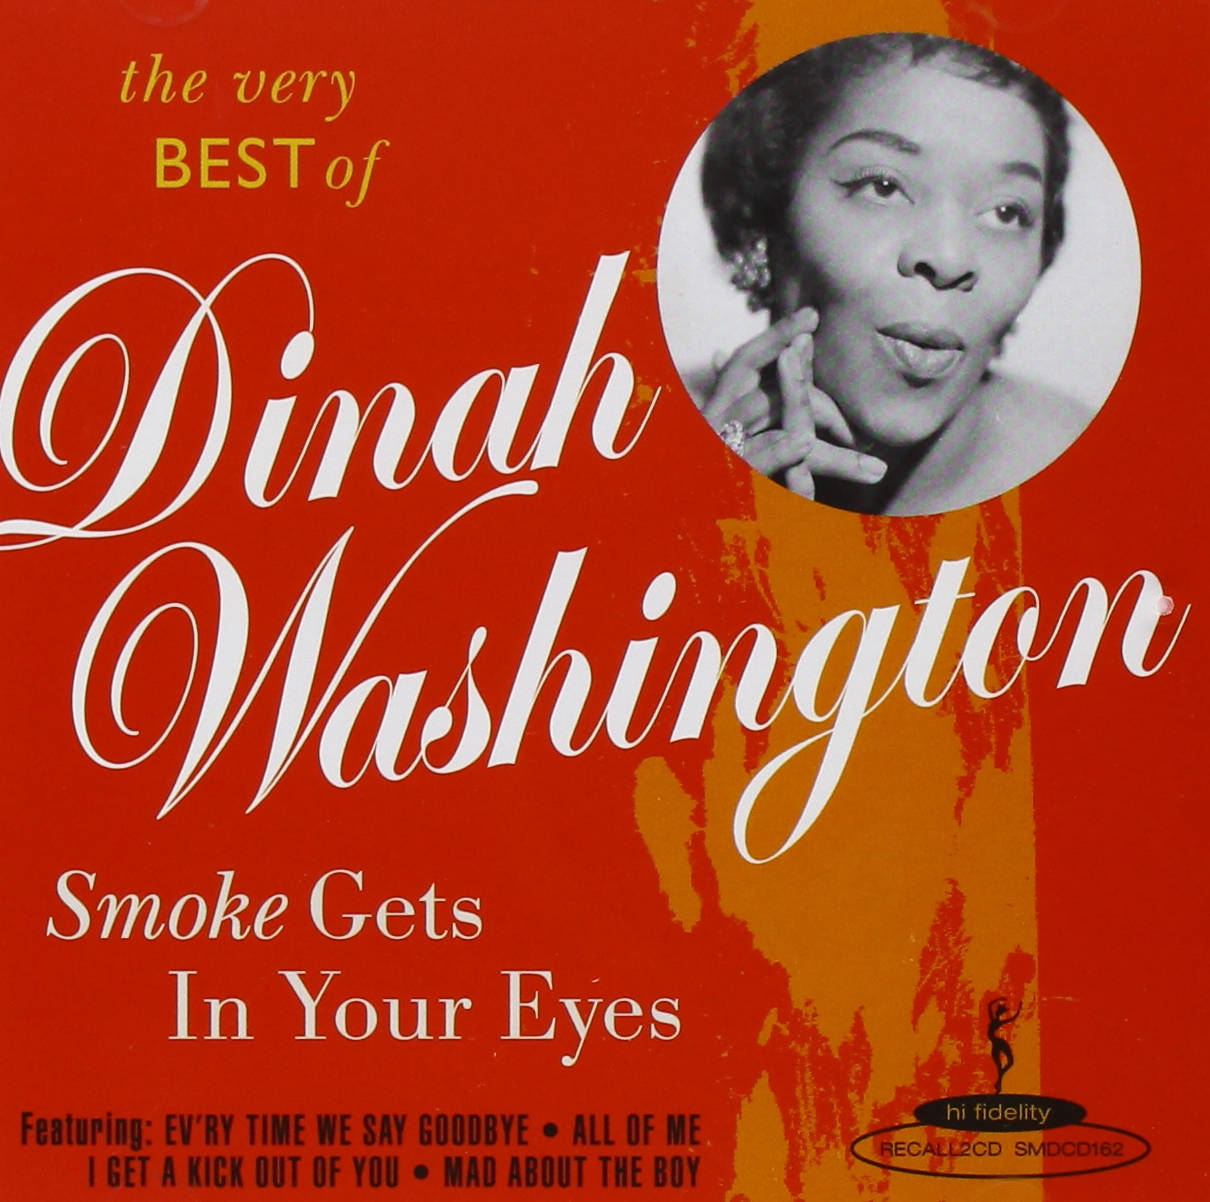 Dinah Washington Smoke Gets In Your eyes Wallpaper